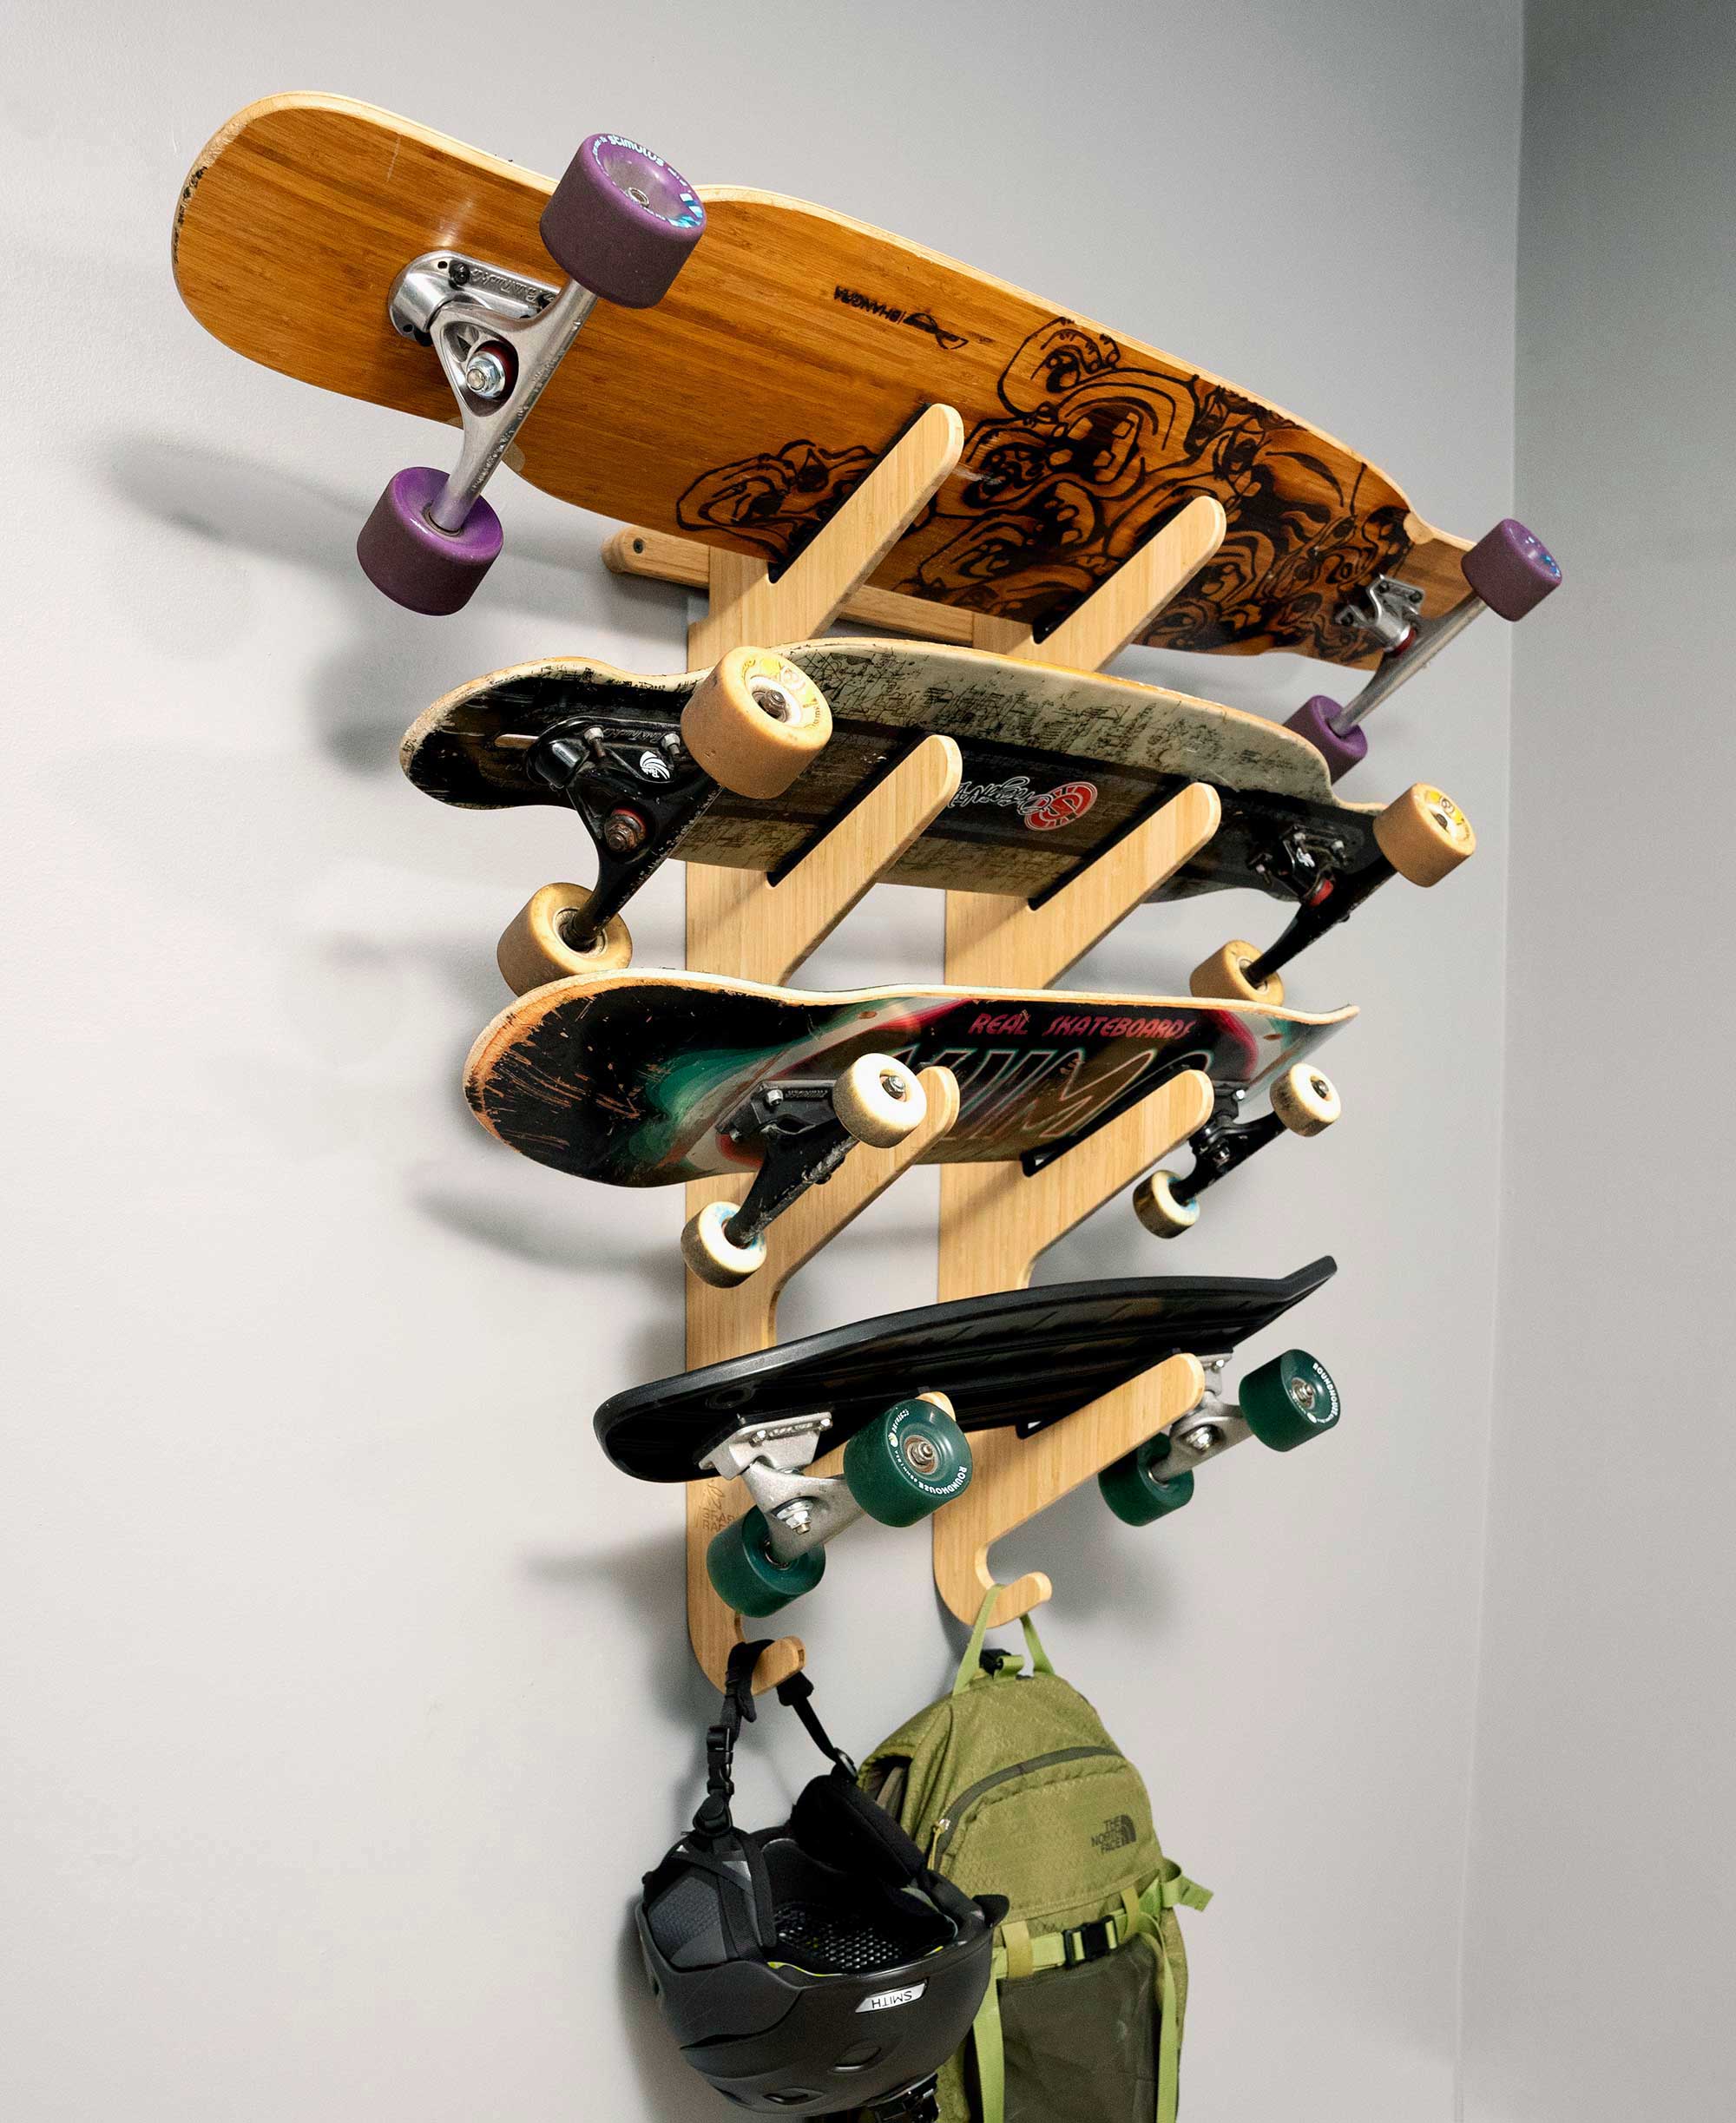 4 Longboard Wall Rack - Skateboard Mount